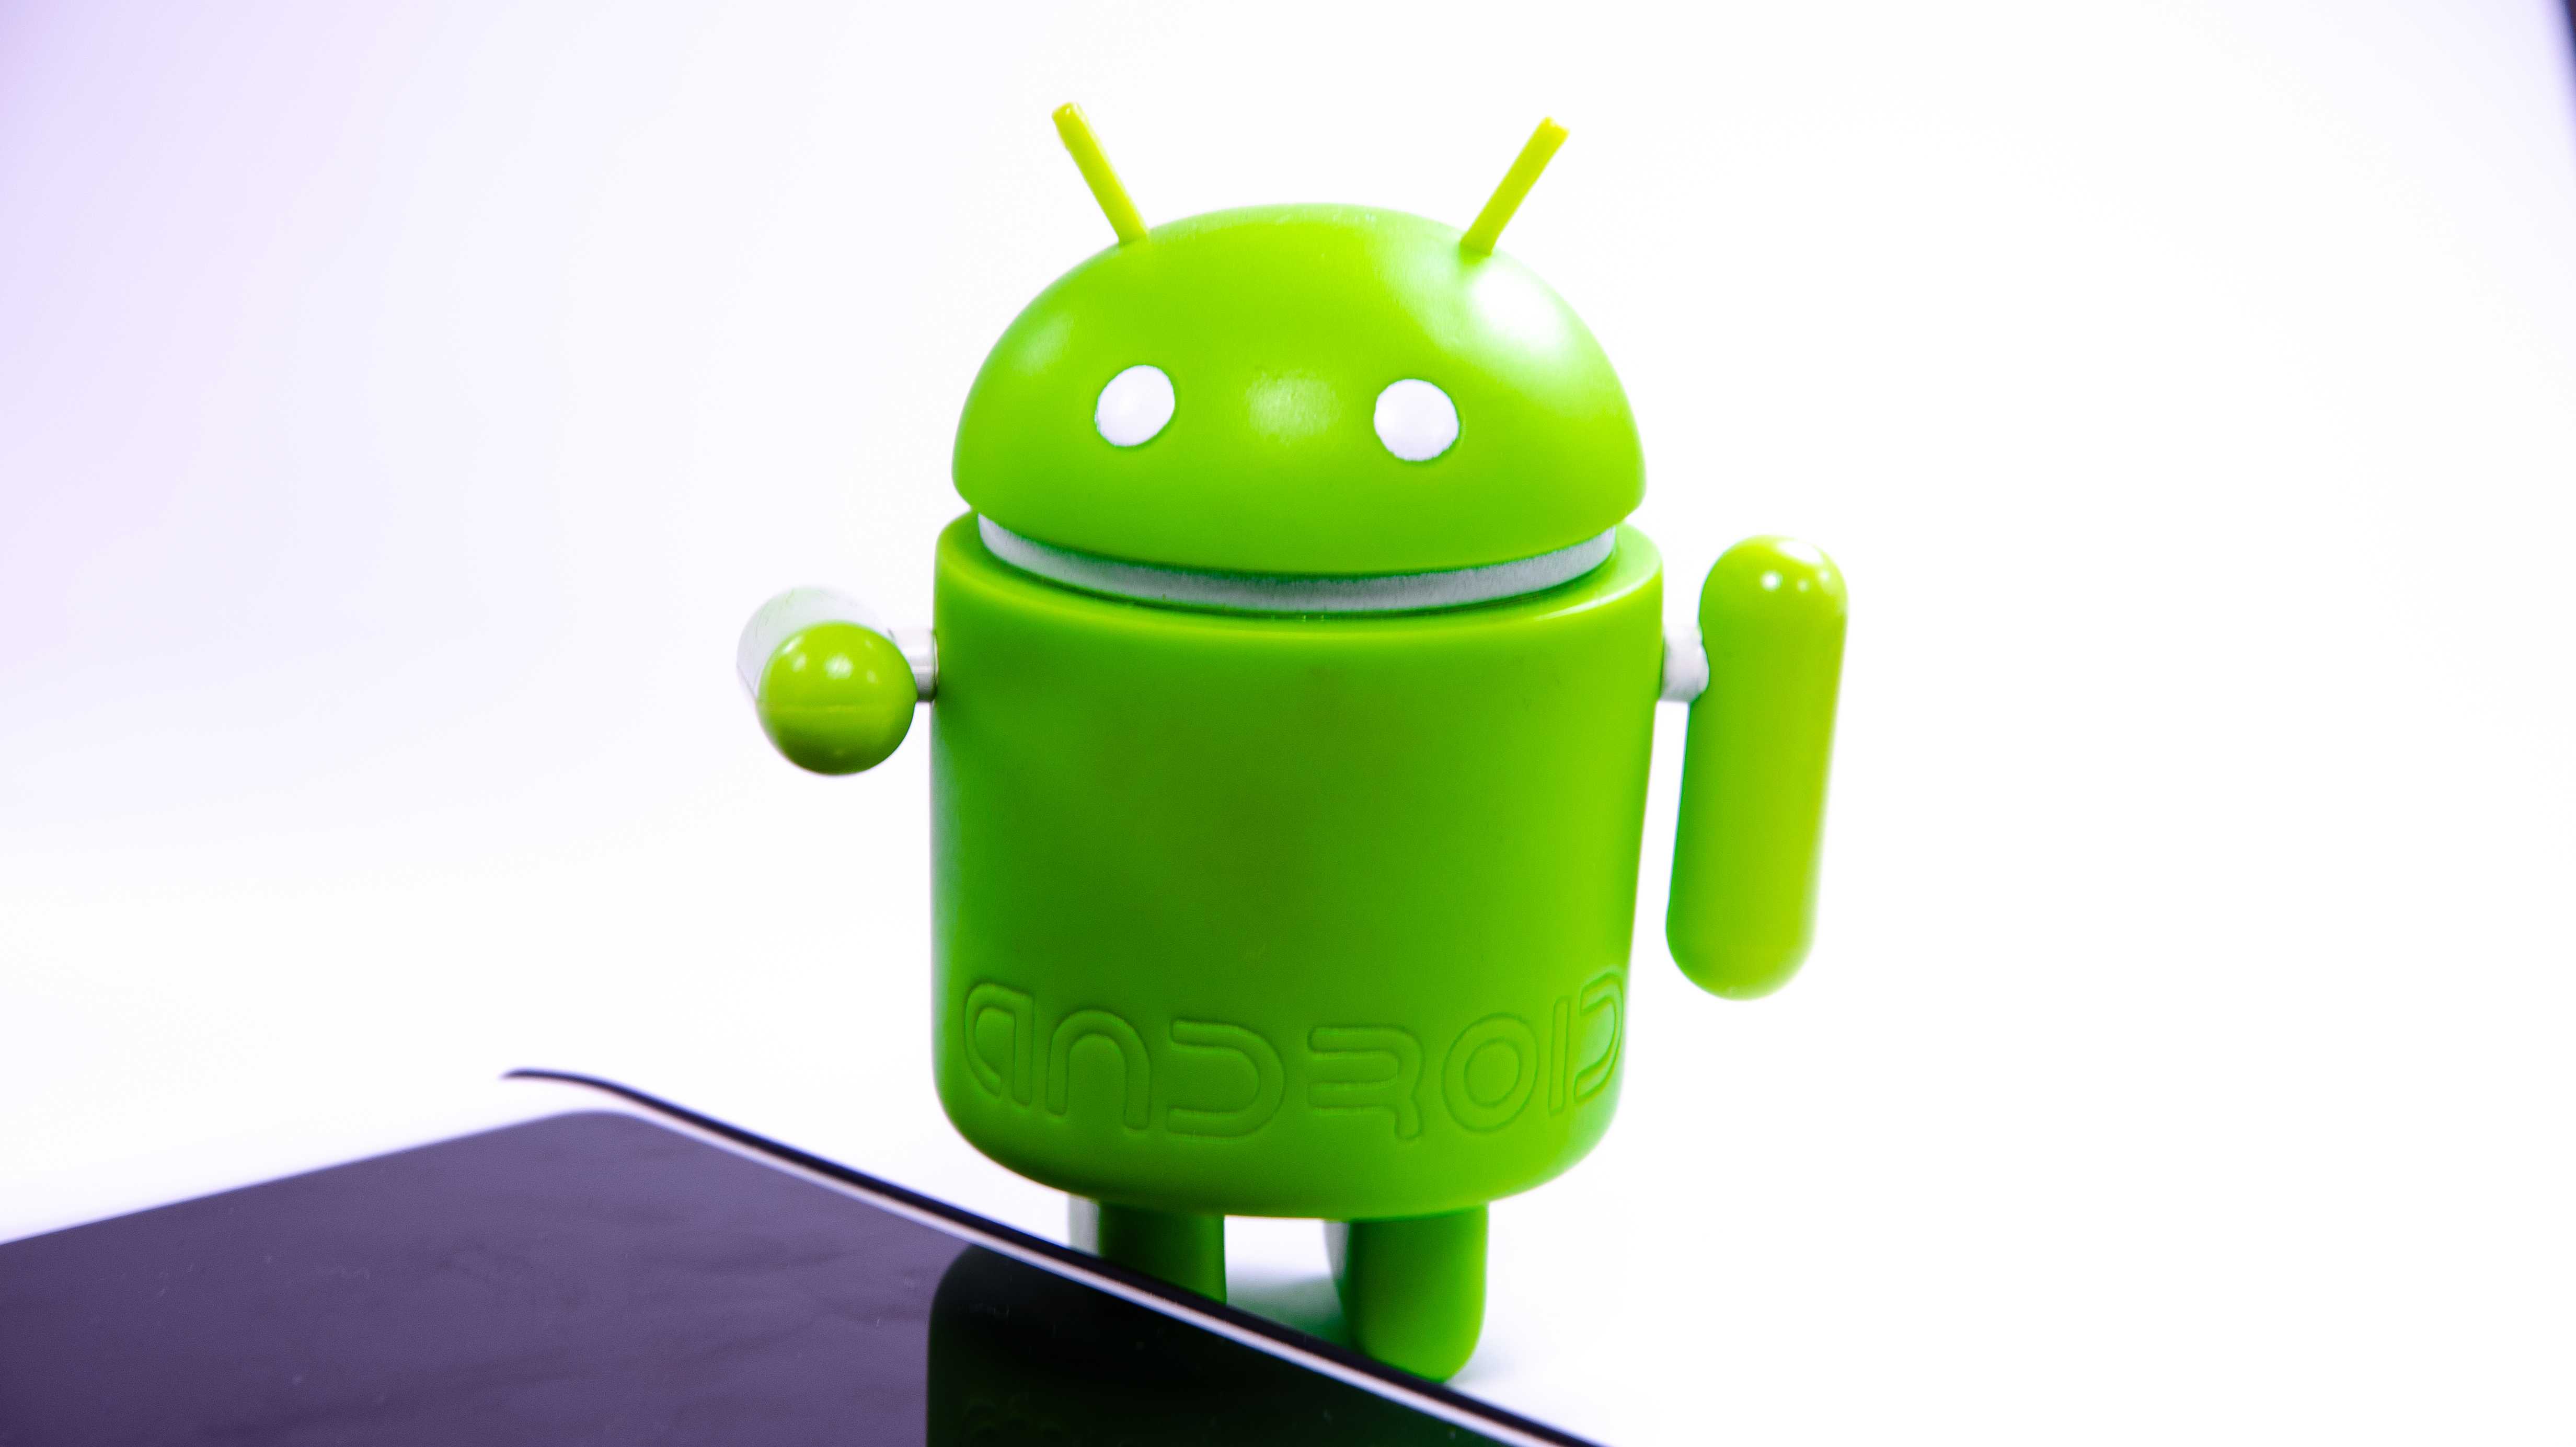 Grüner Androide, davor liegt ein Handy